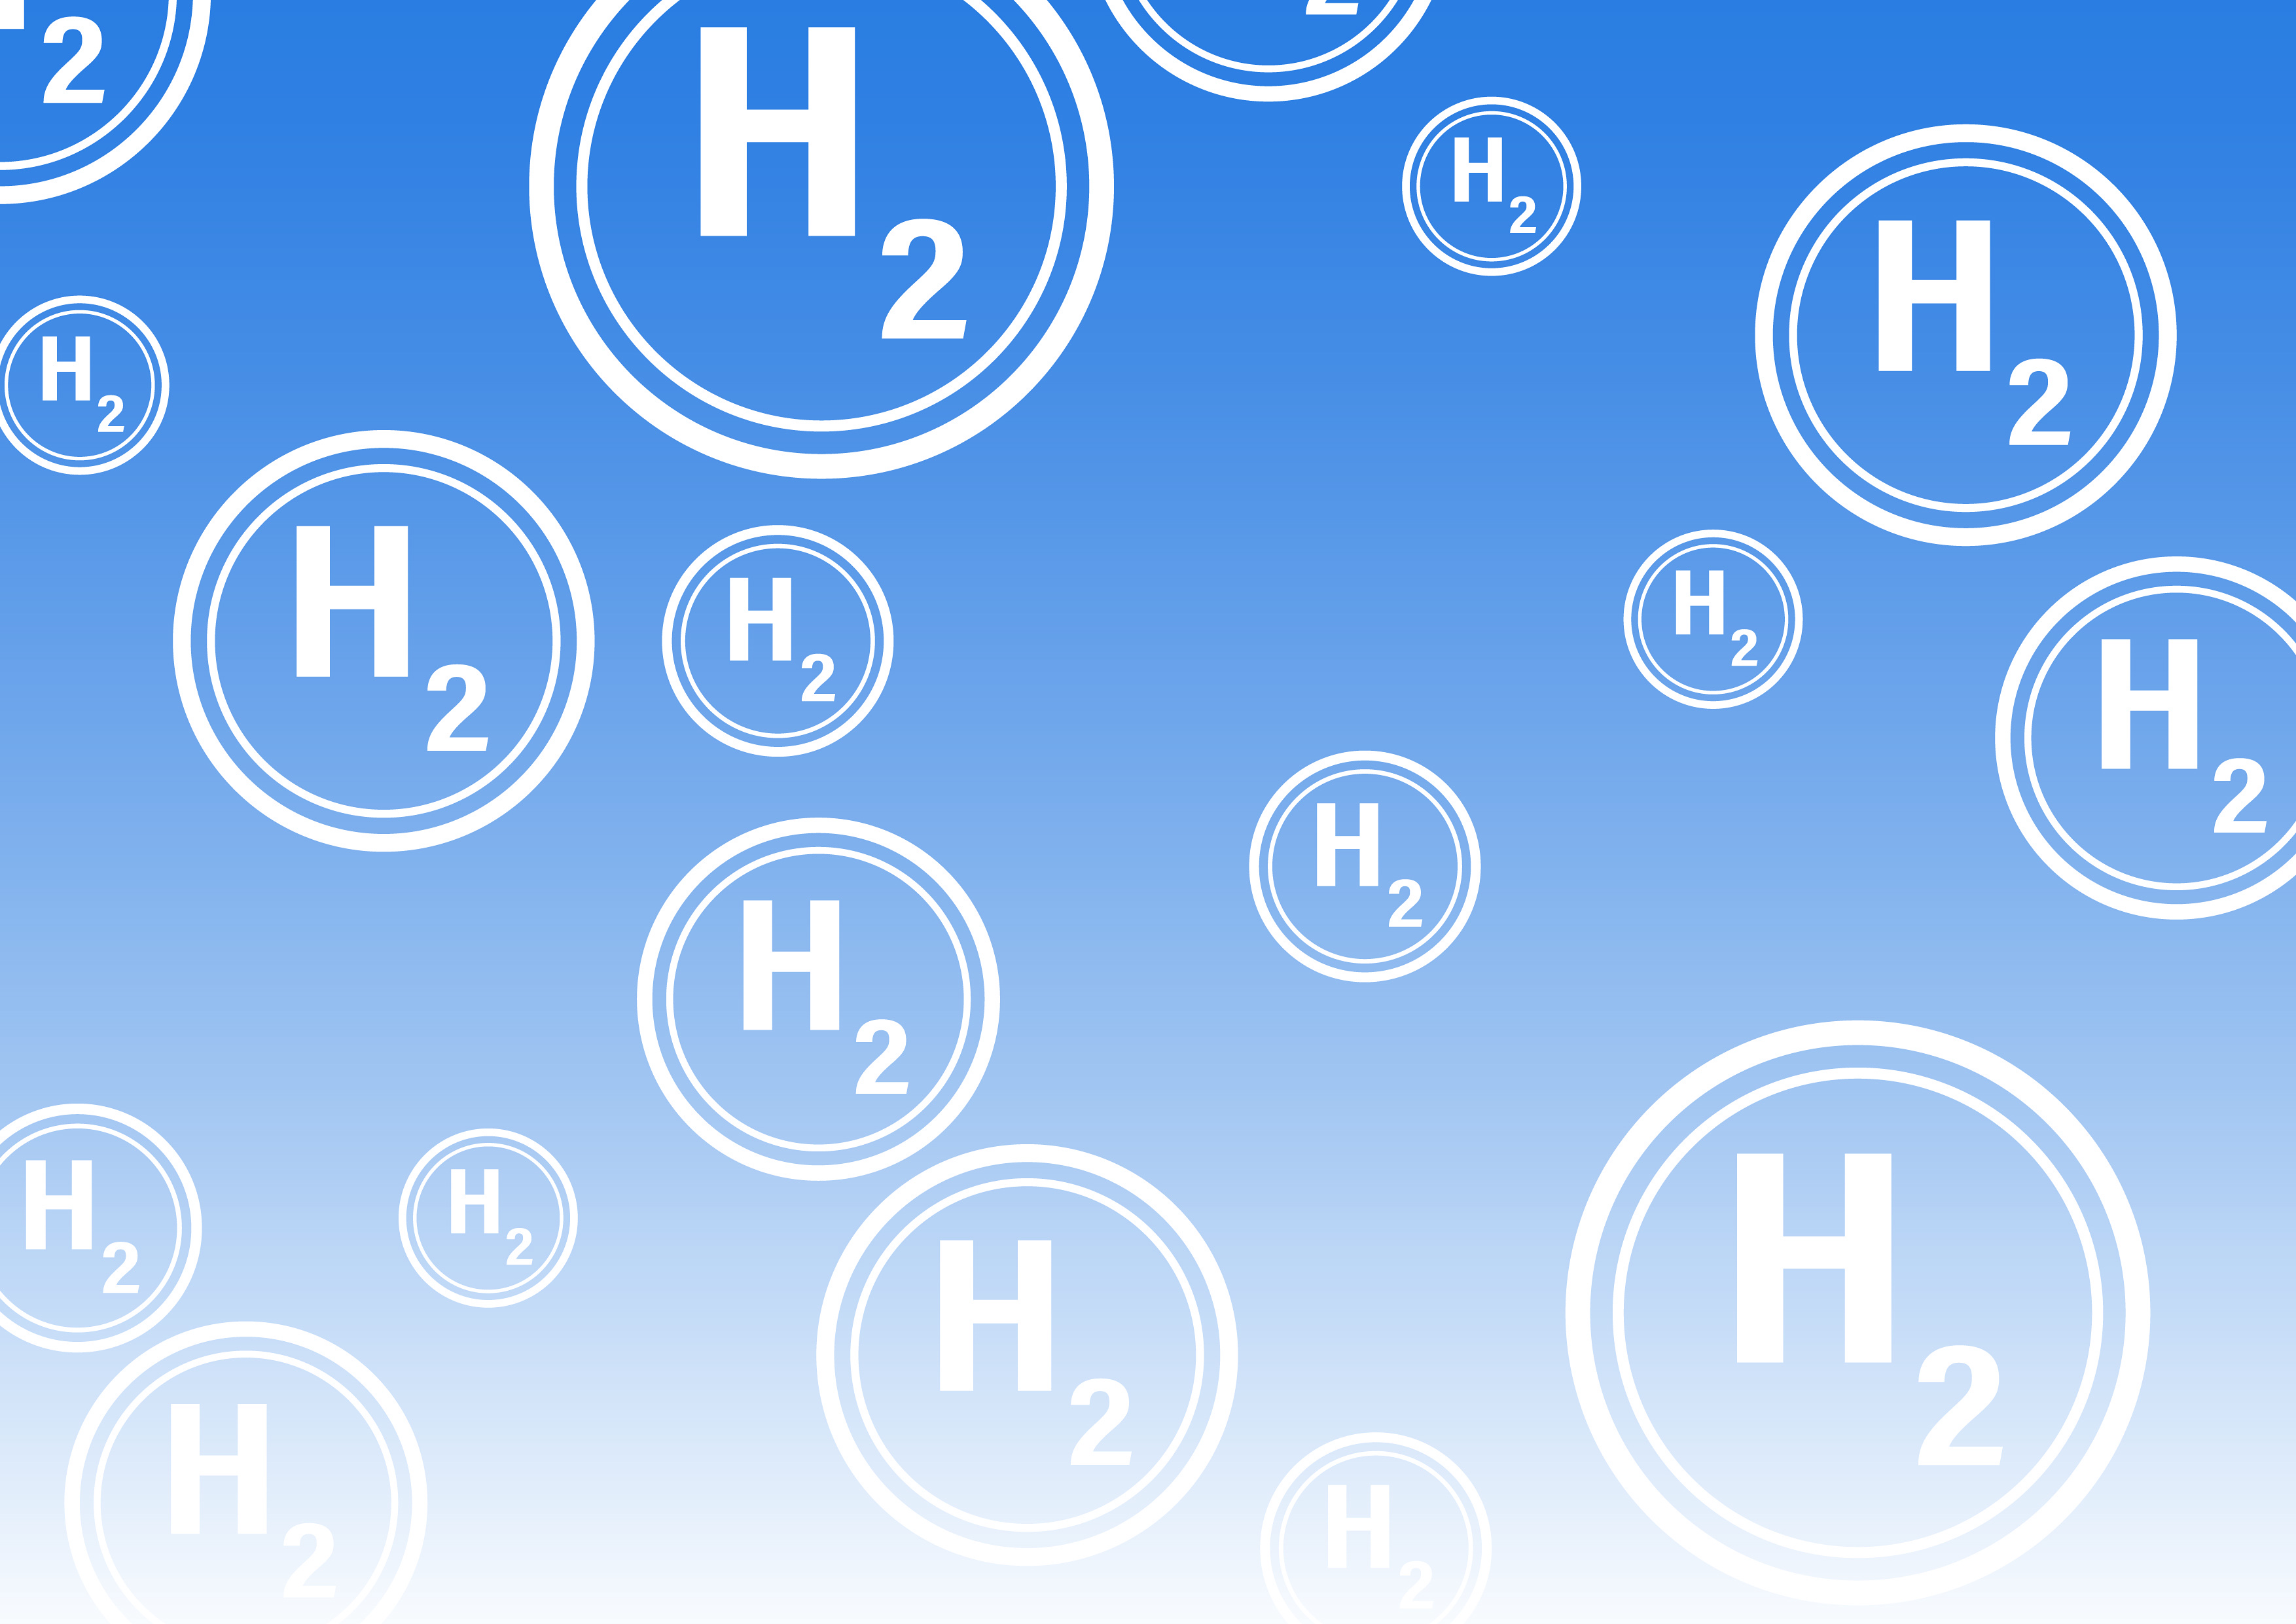 Symbolbild Wasserstoff (H2): verschieden große Kreise die jeweils die chemische Summenformel des Wasserstoffmoleküls (H2) enthalten